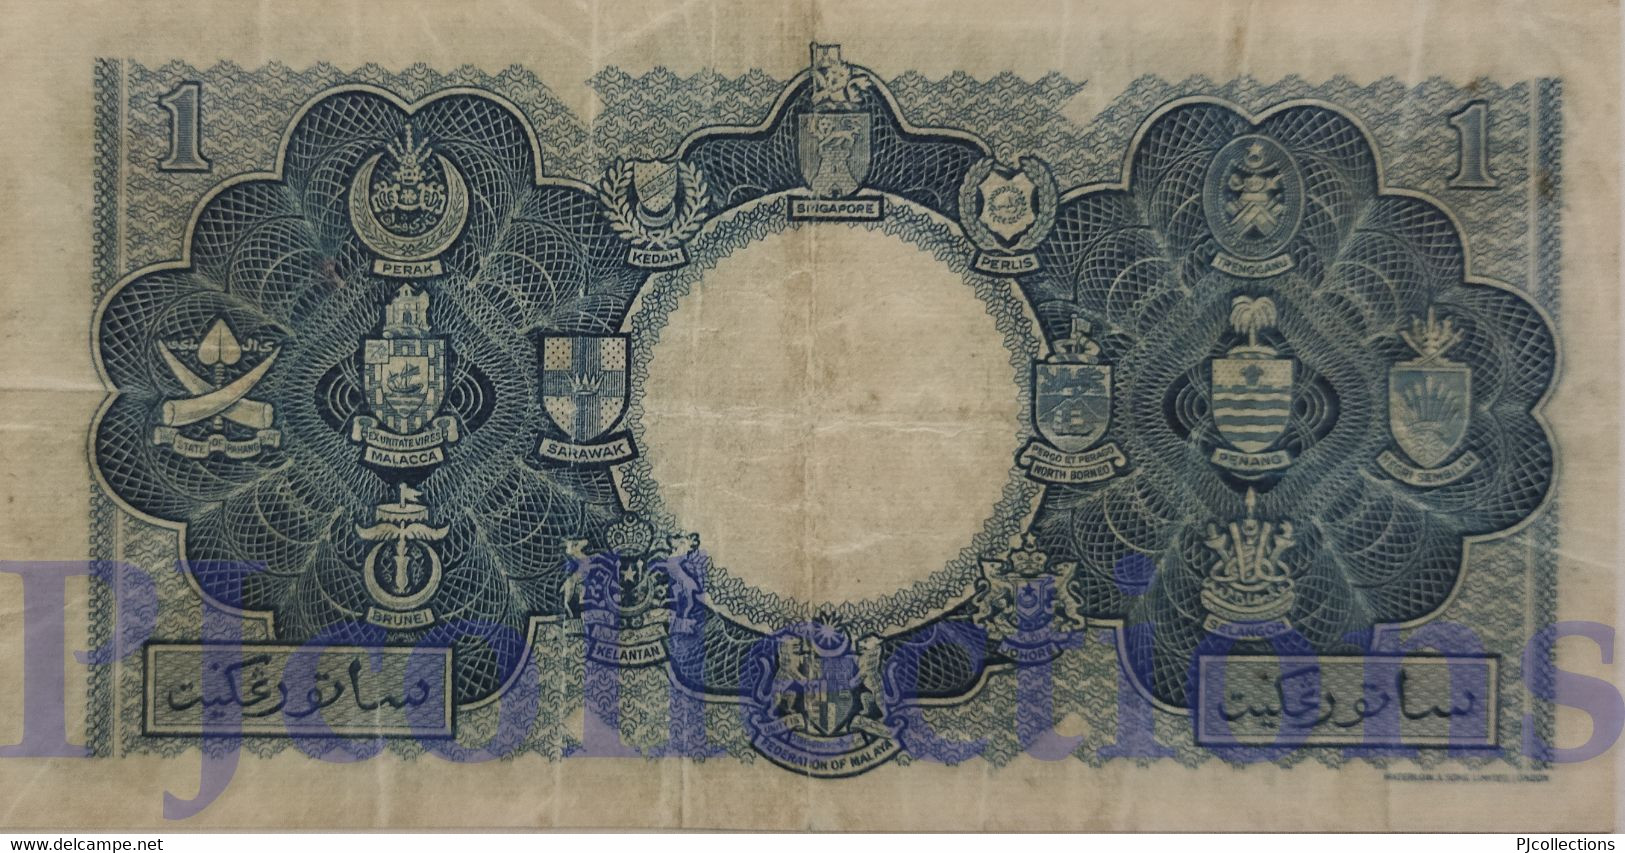 MALAYA & BRITISH BORNEO 1 DOLLAR 1953 PICK 1 VF RARE - Other - Asia